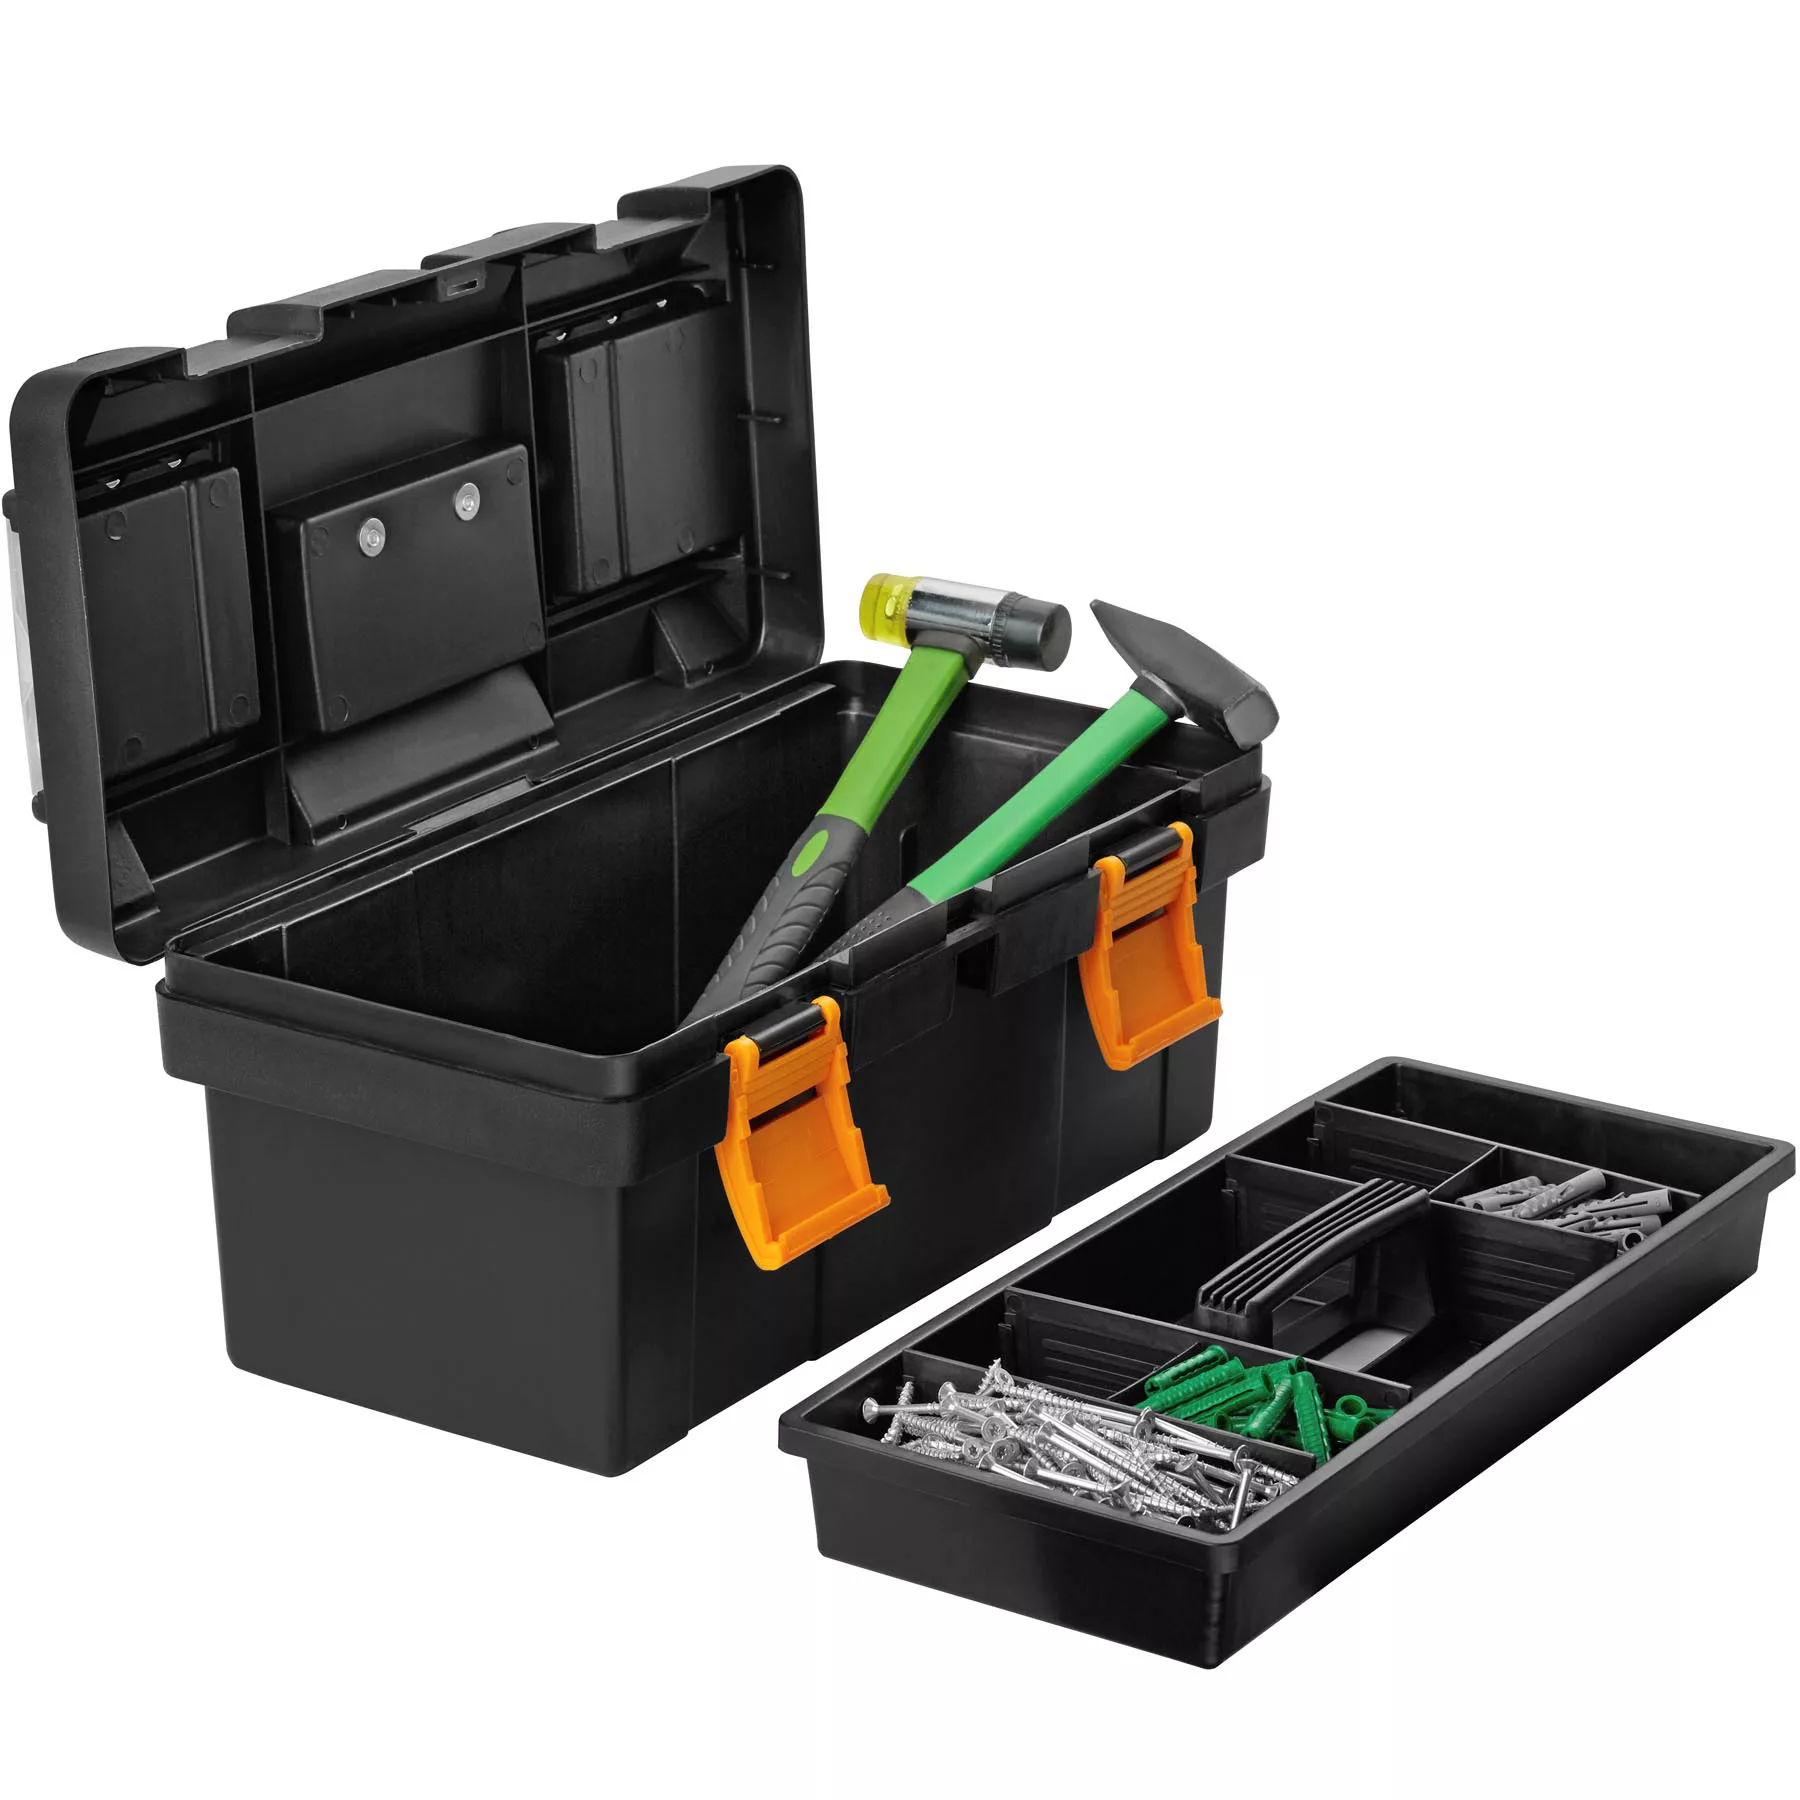 Werkzeugbox Dwayne - M / 42 x 21,5 x 19,5 cm günstig online kaufen